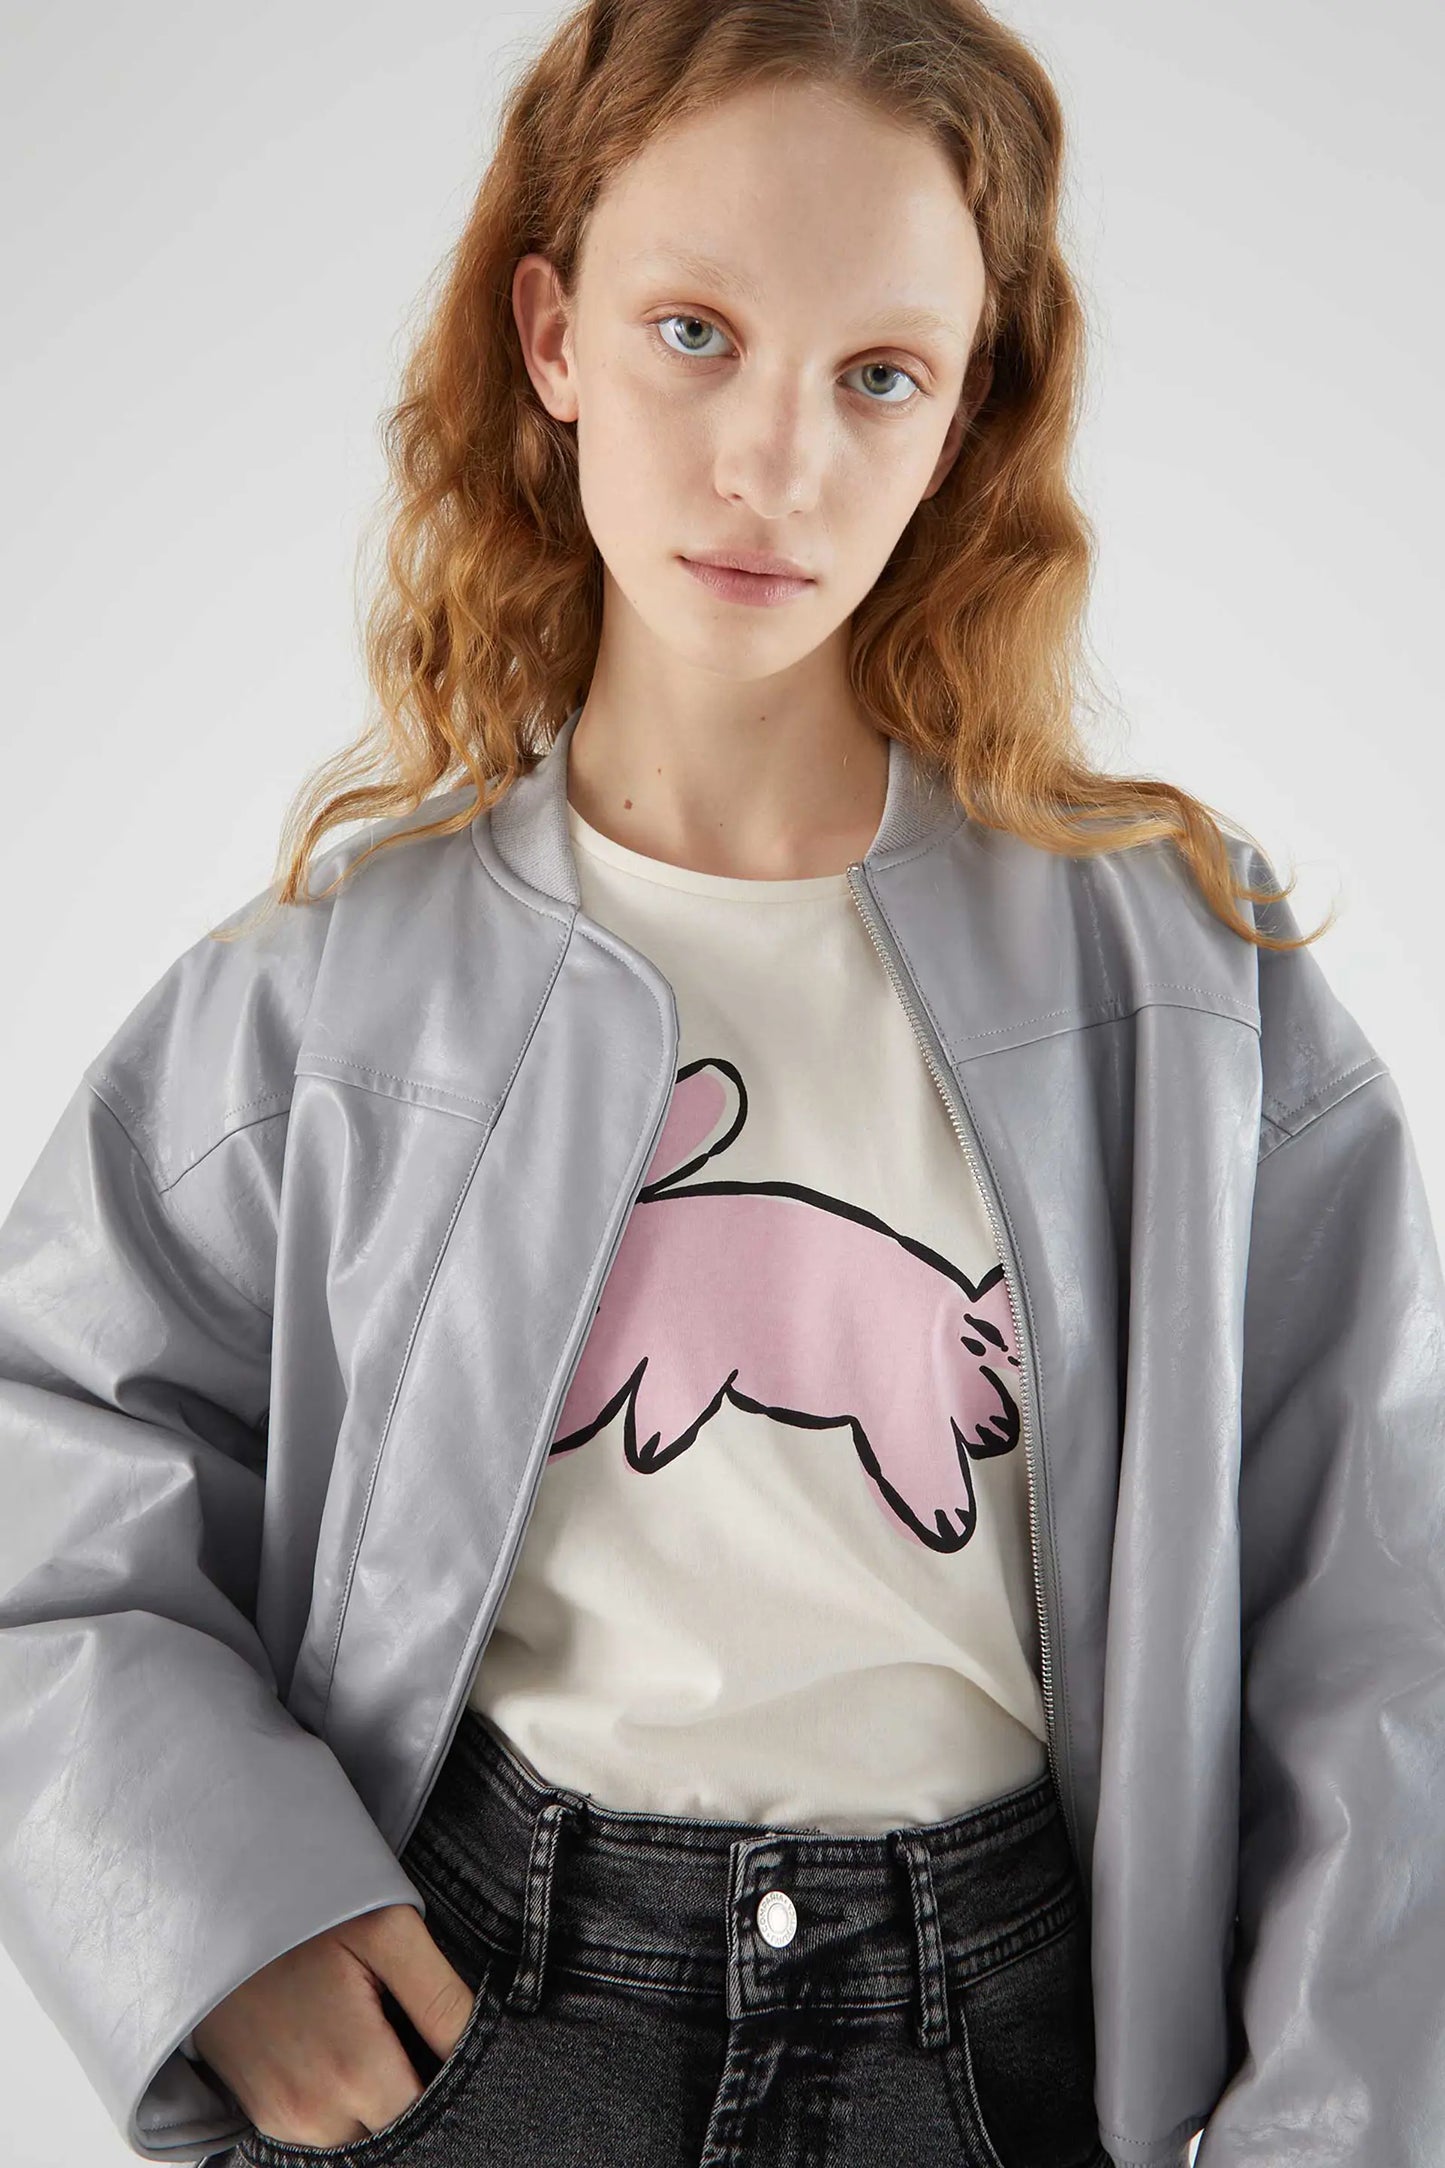 Camiseta de algodón con gráfica de conejo